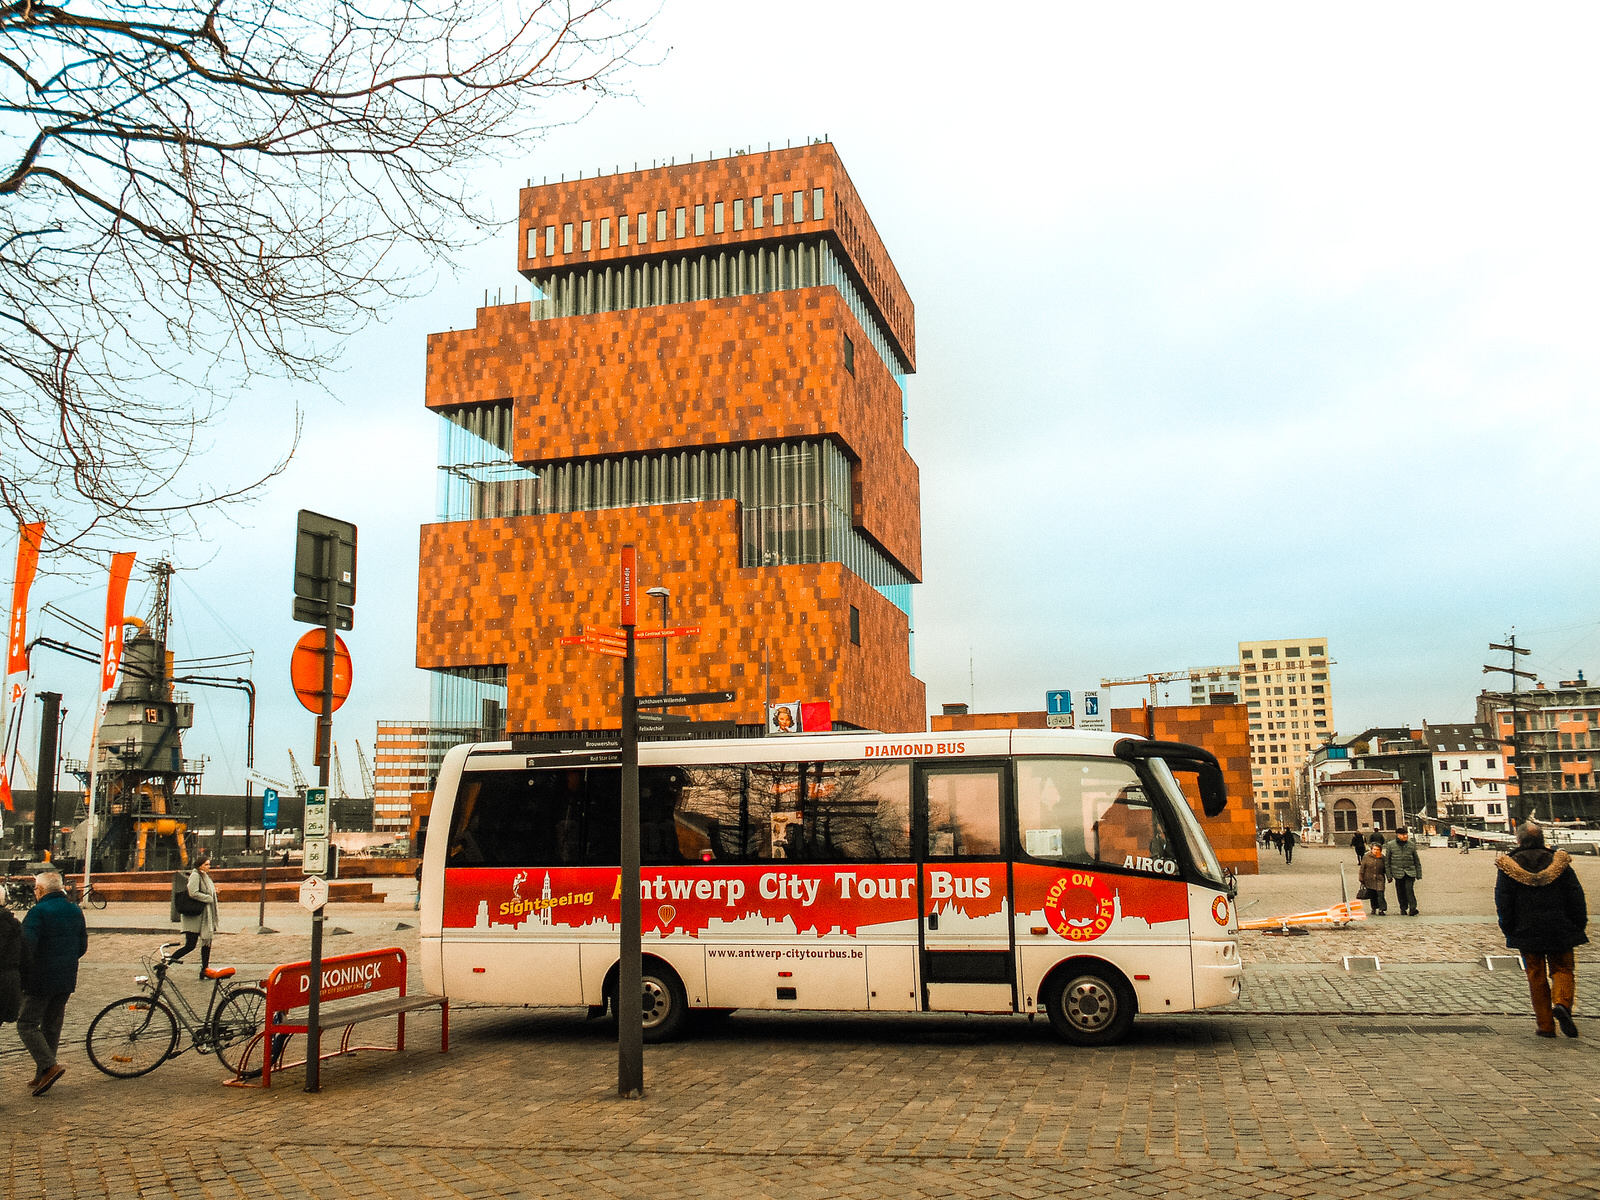 Antwerp City Tour Bus: Hop on/hop off